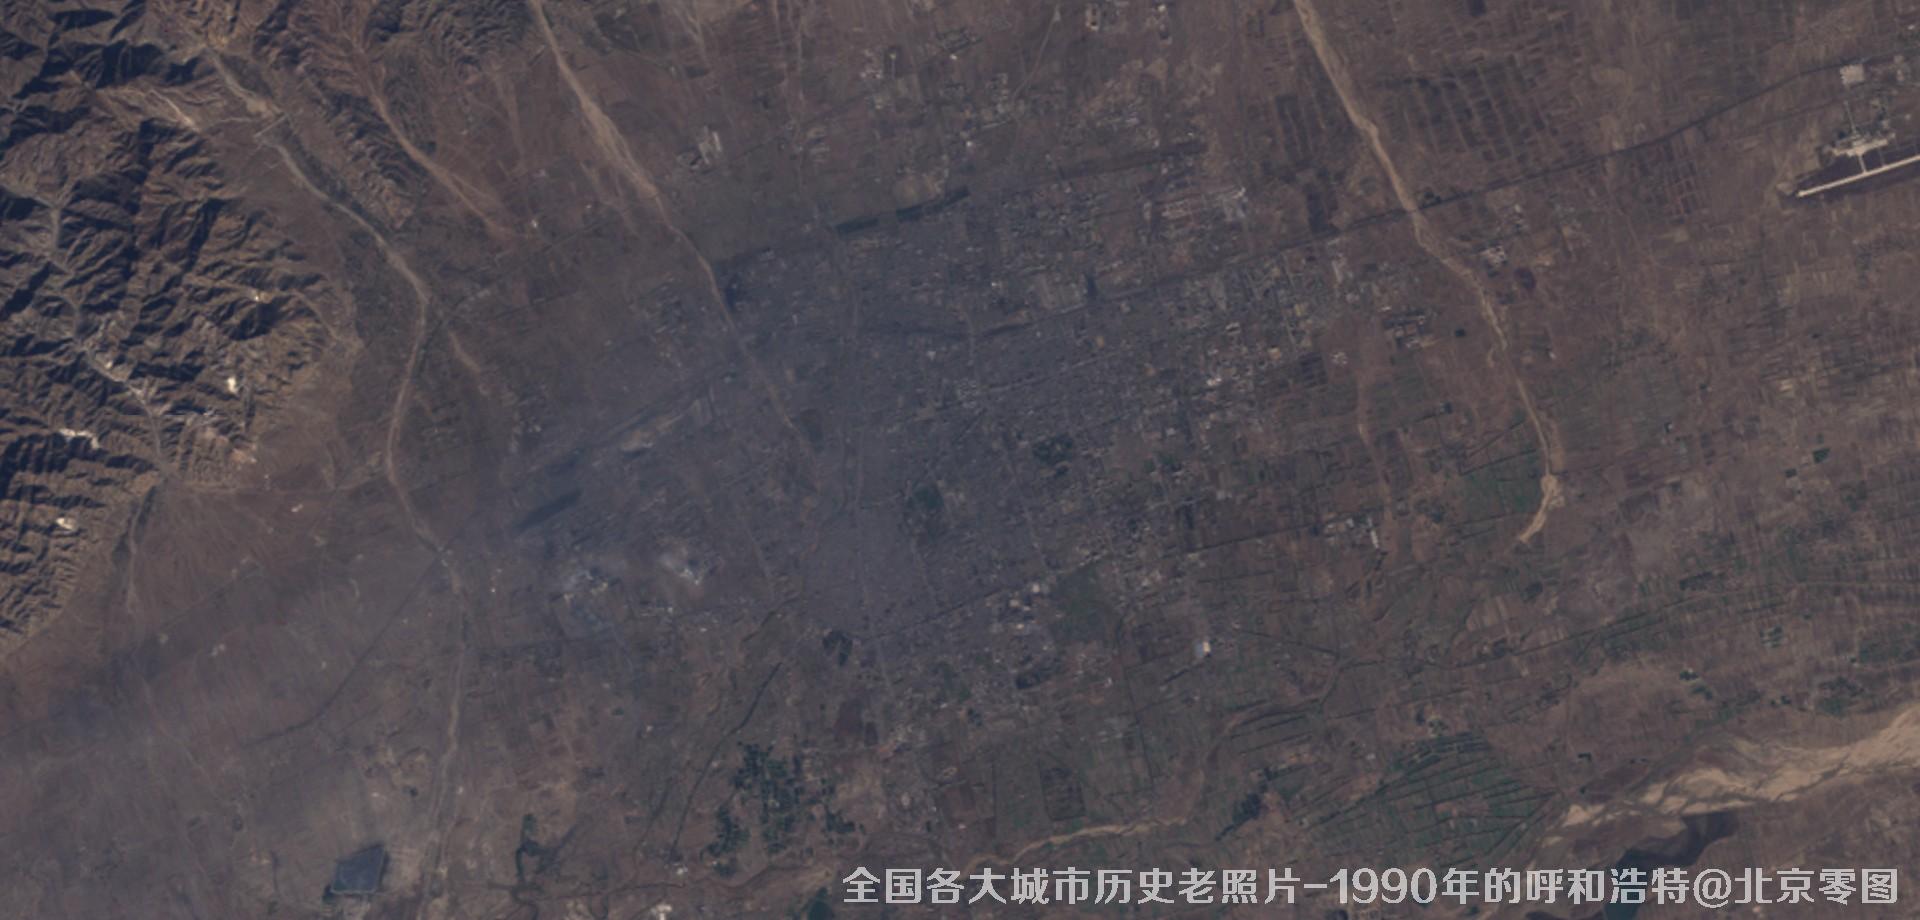 美国Landsat卫星拍摄的1990年的内蒙古呼和浩特市历史卫星影像图